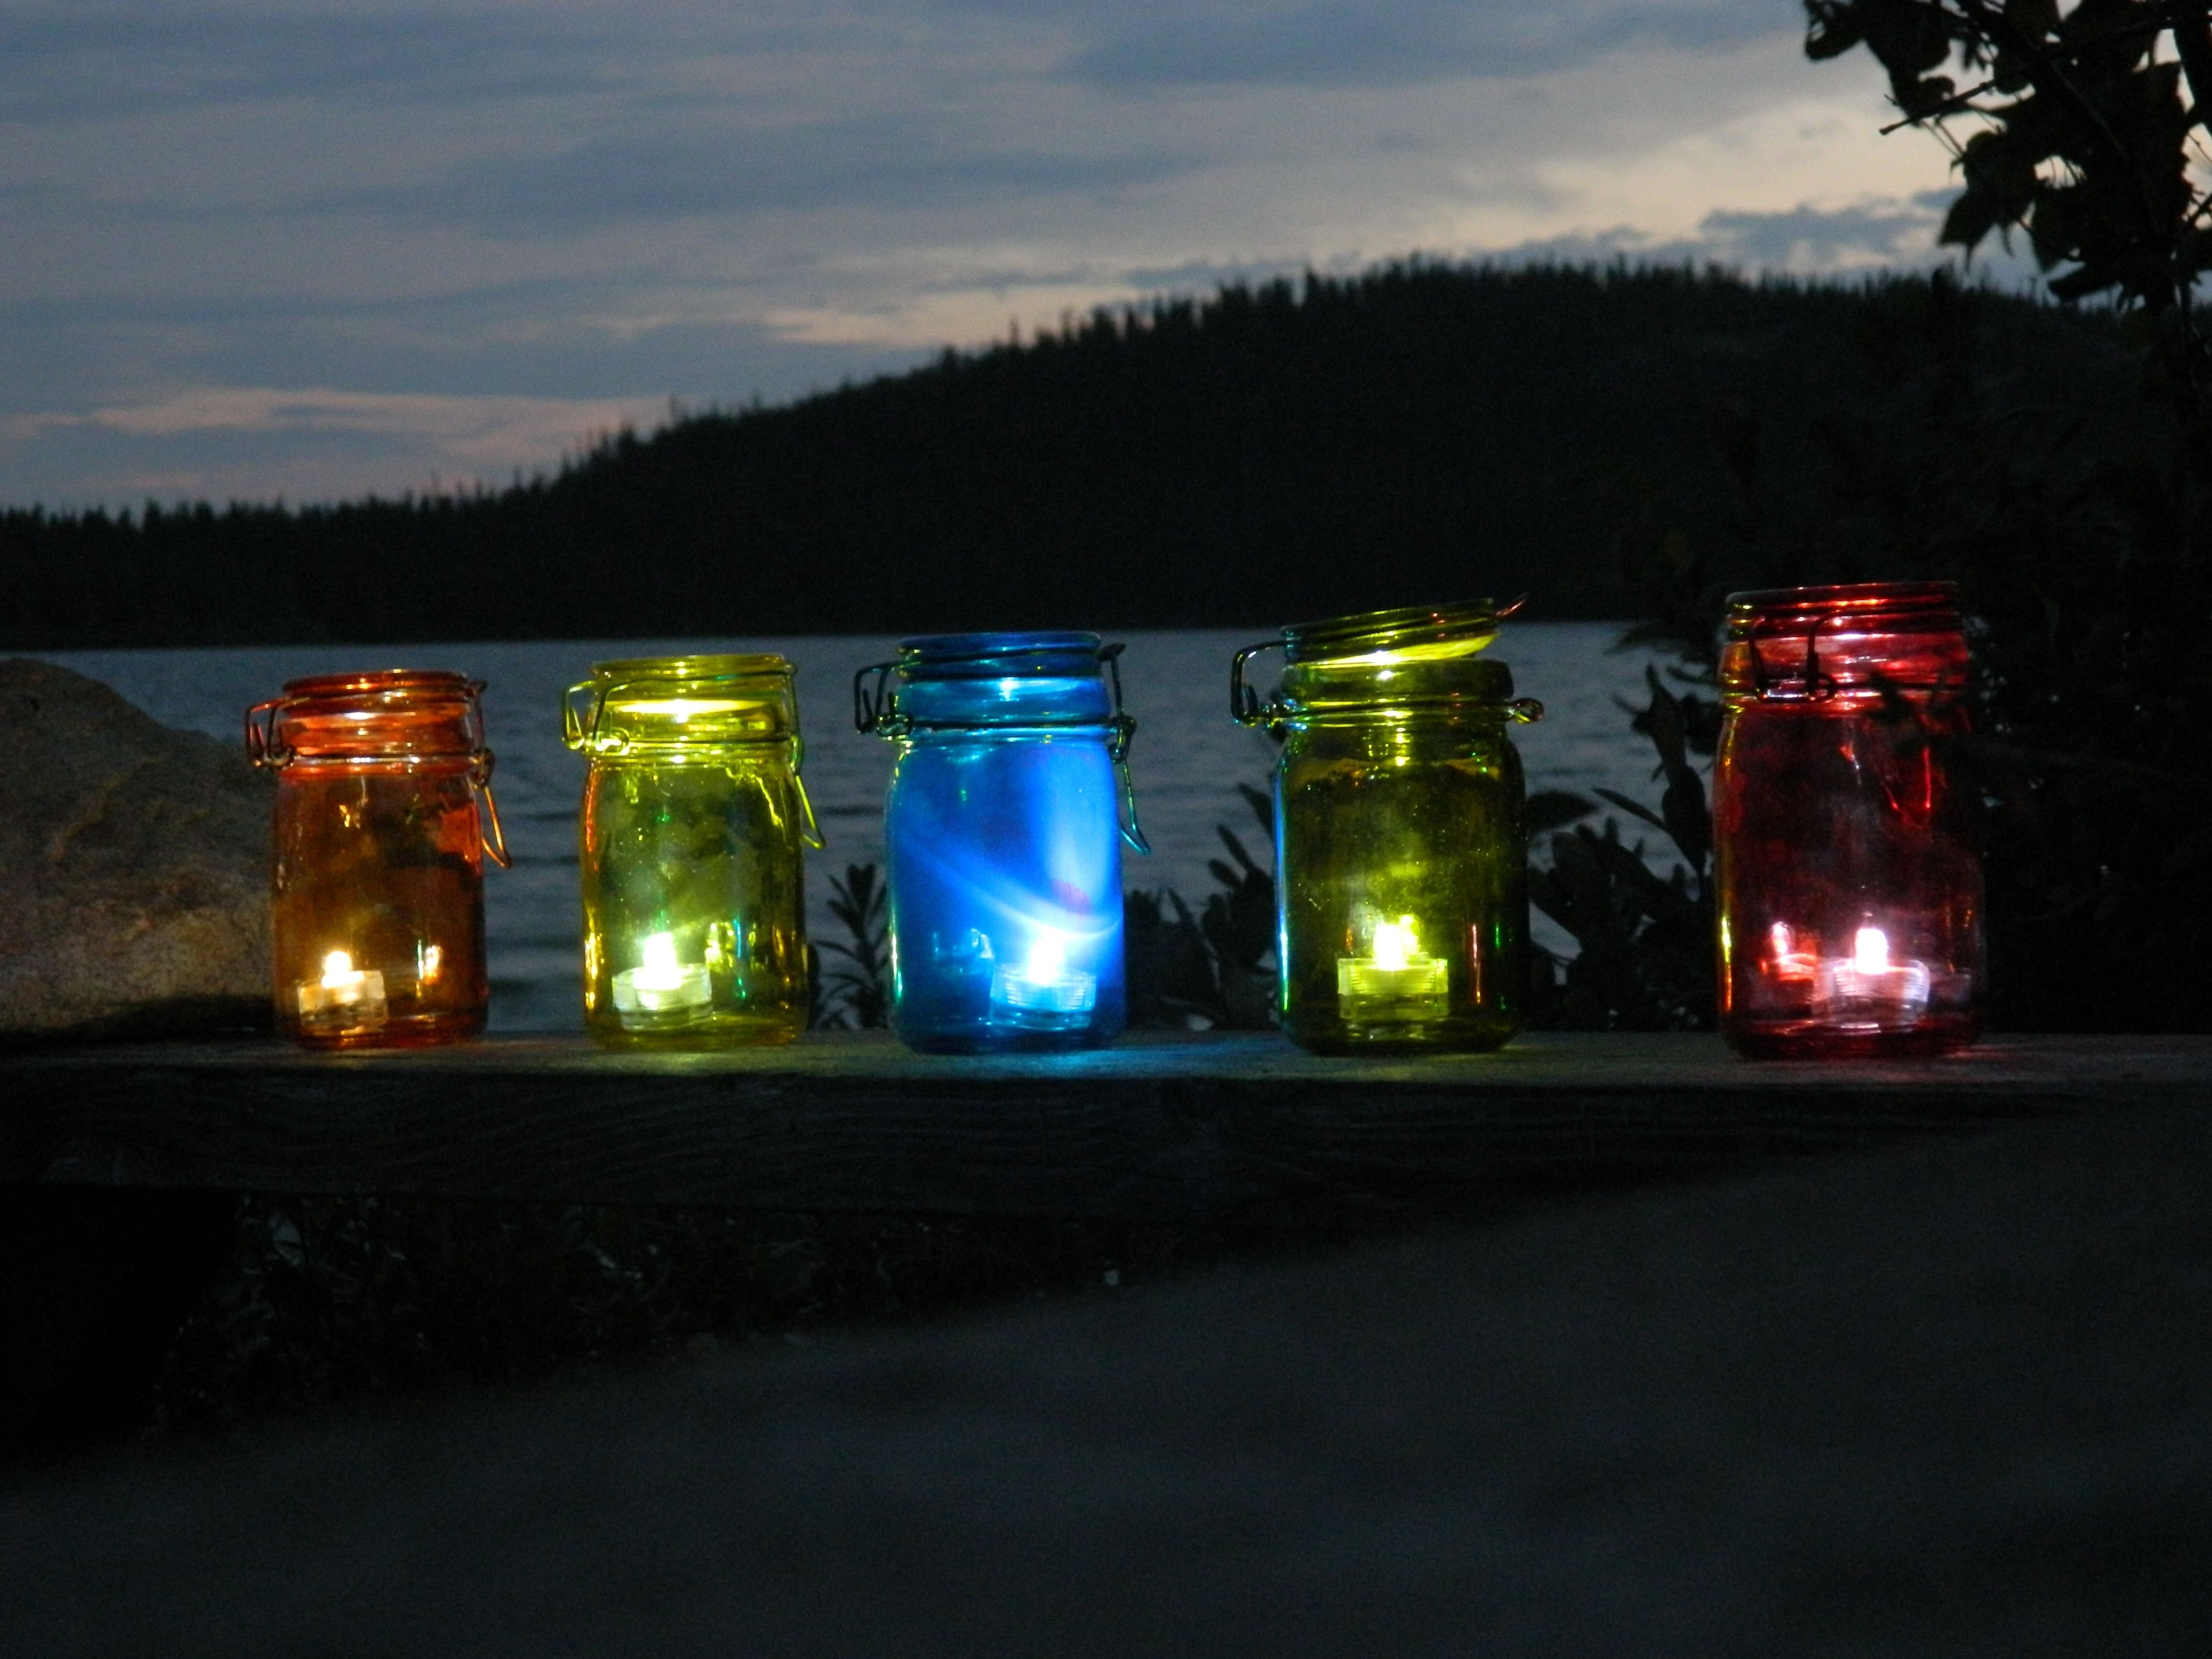 Diy Outdoor Tea Light Lanterns | A Little Bit Of Glass With Regard To Outdoor Tea Light Lanterns (View 3 of 20)